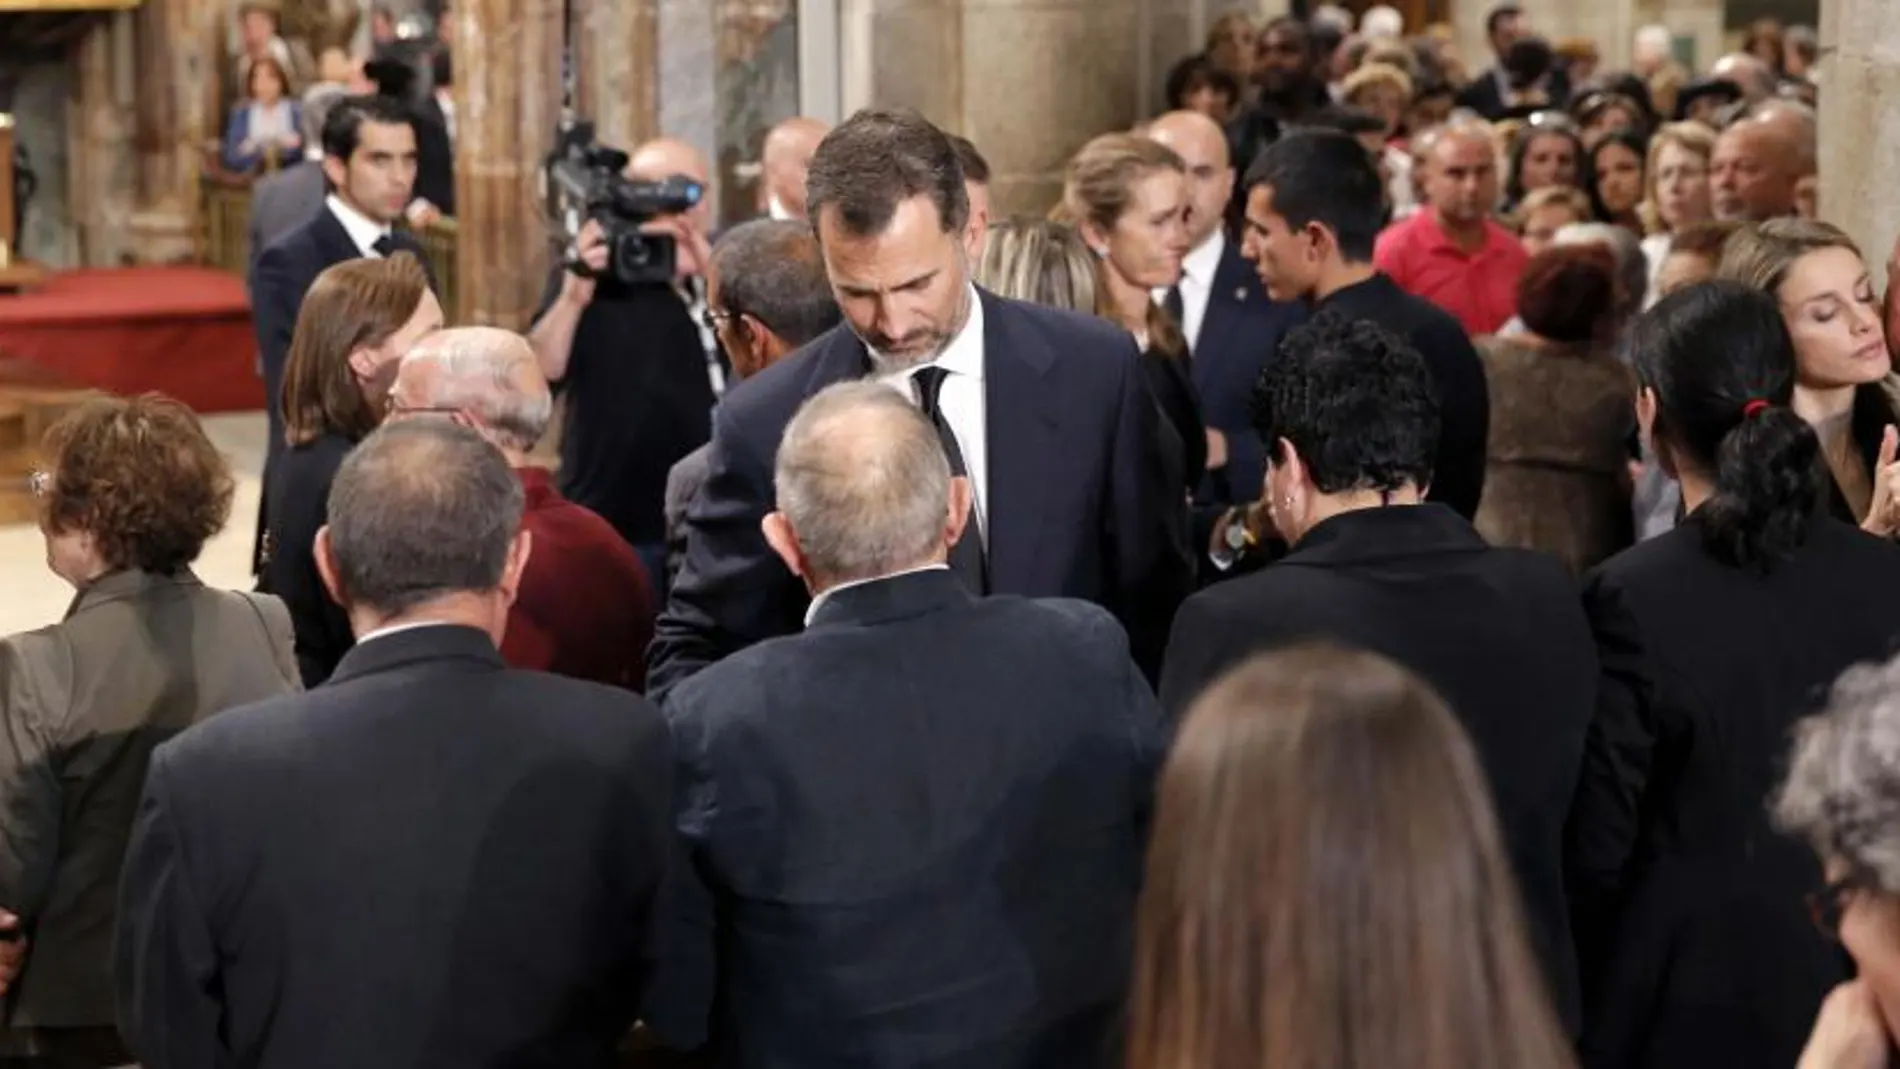 Los Príncipes de Asturias, Don Felipe y Doña Letizia, dan el pésame a los familiares de las 79 víctimas mortales al finalizar el funeral.